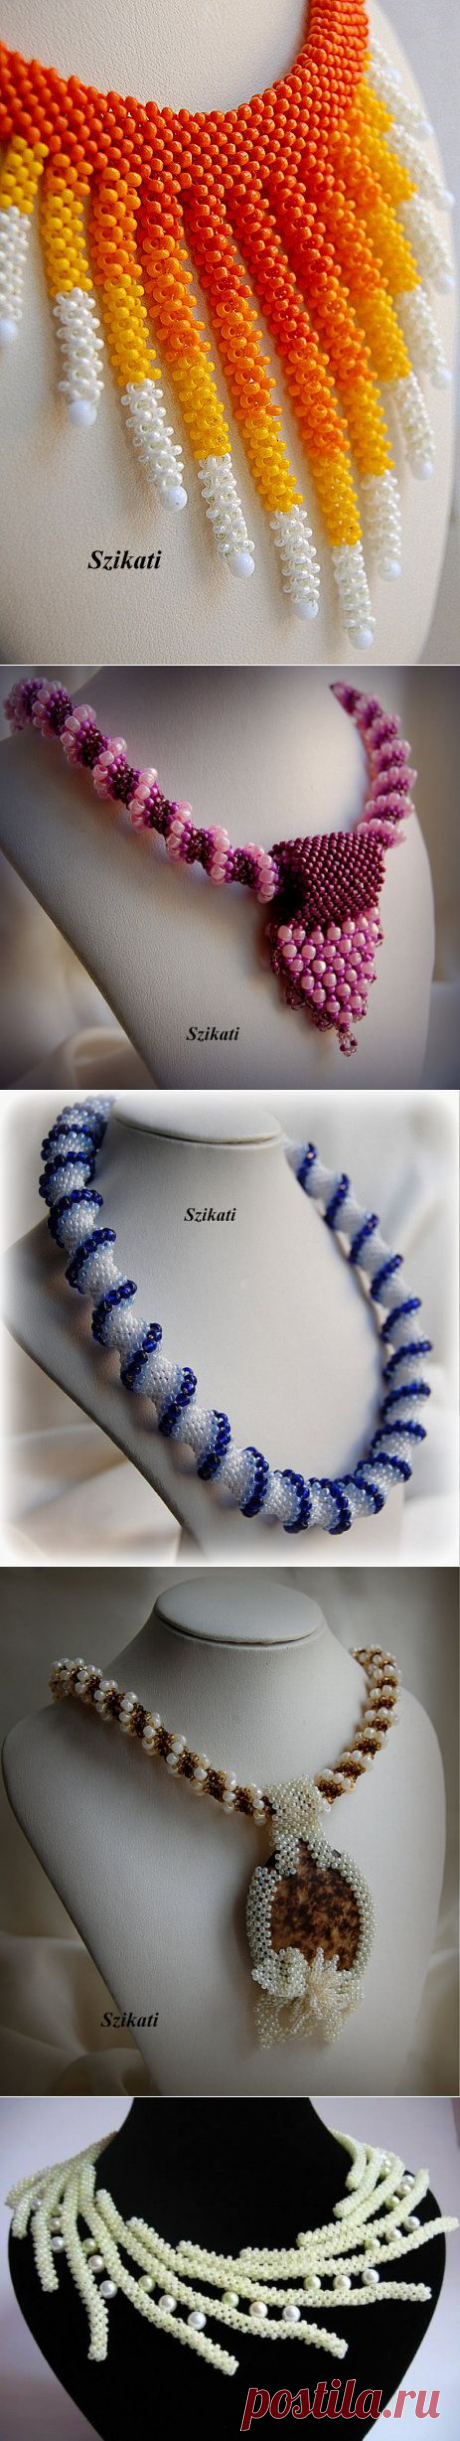 Жгуты и ожерелья из жгутов от Szikati